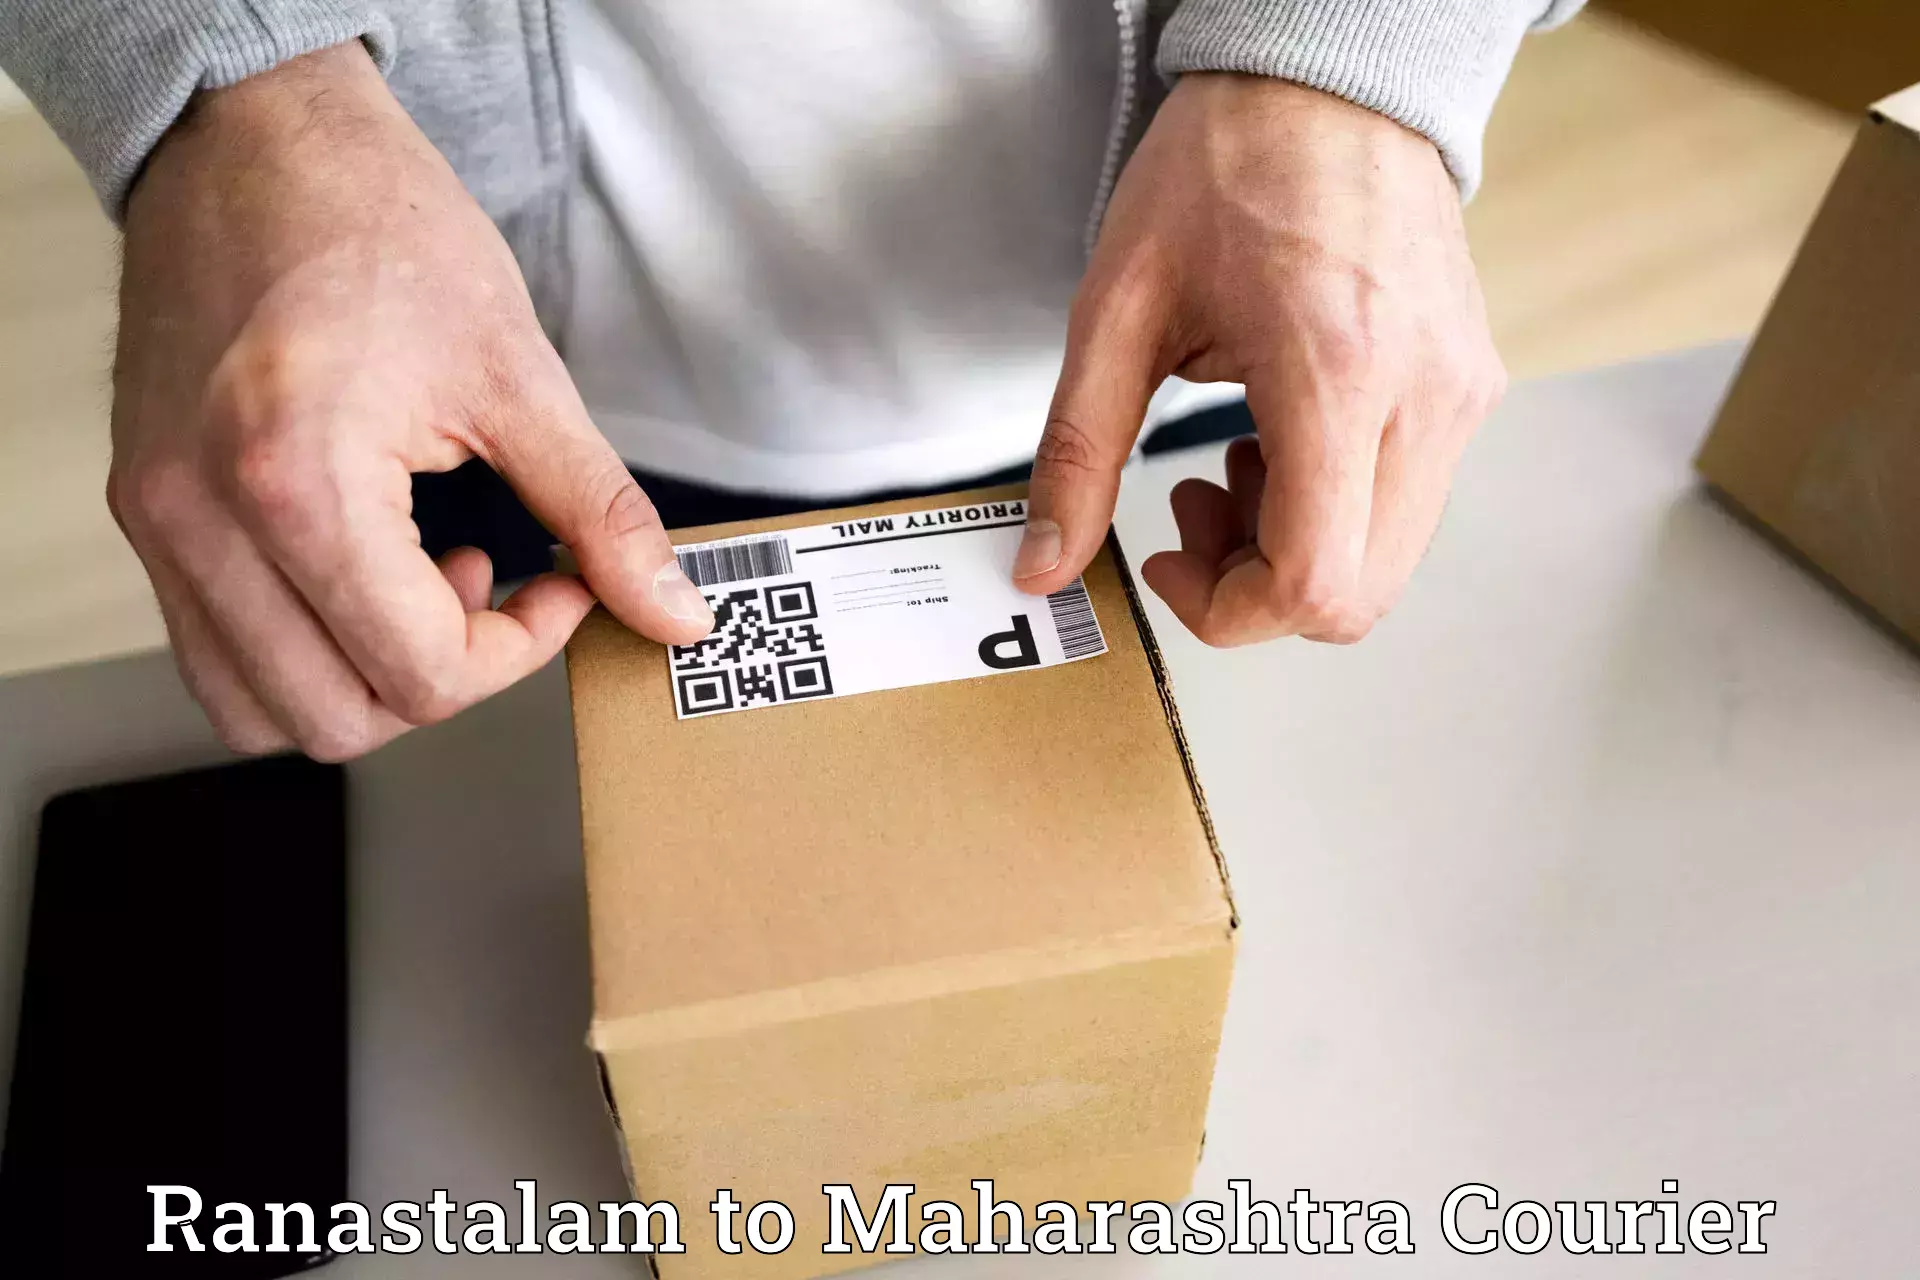 Advanced delivery solutions Ranastalam to Navi Mumbai